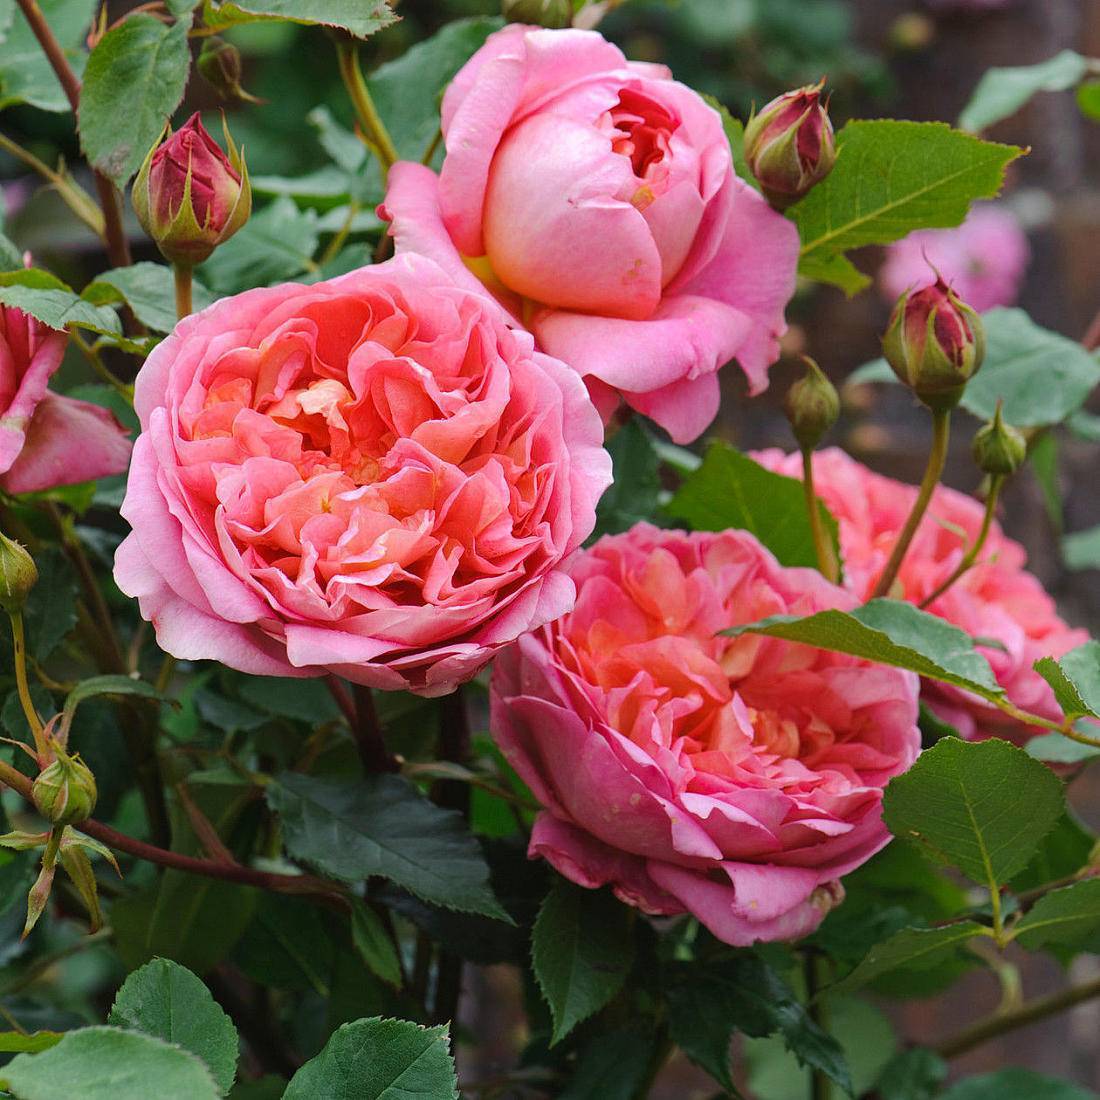 Описание английской шраб-розы клэр остин: что за сорт, особенности цветения